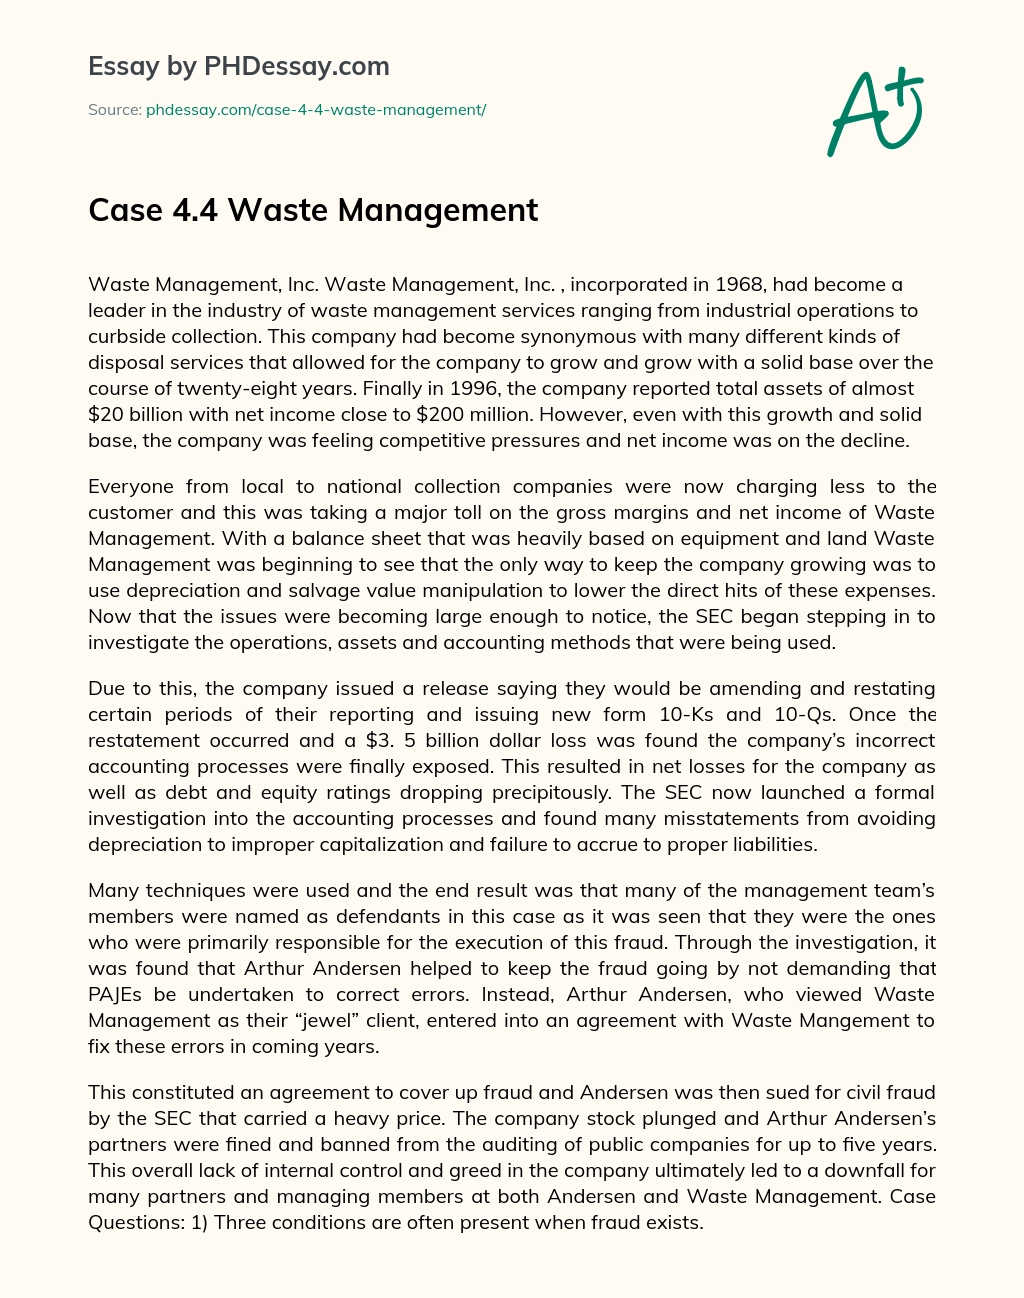 Case 4.4 Waste Management essay